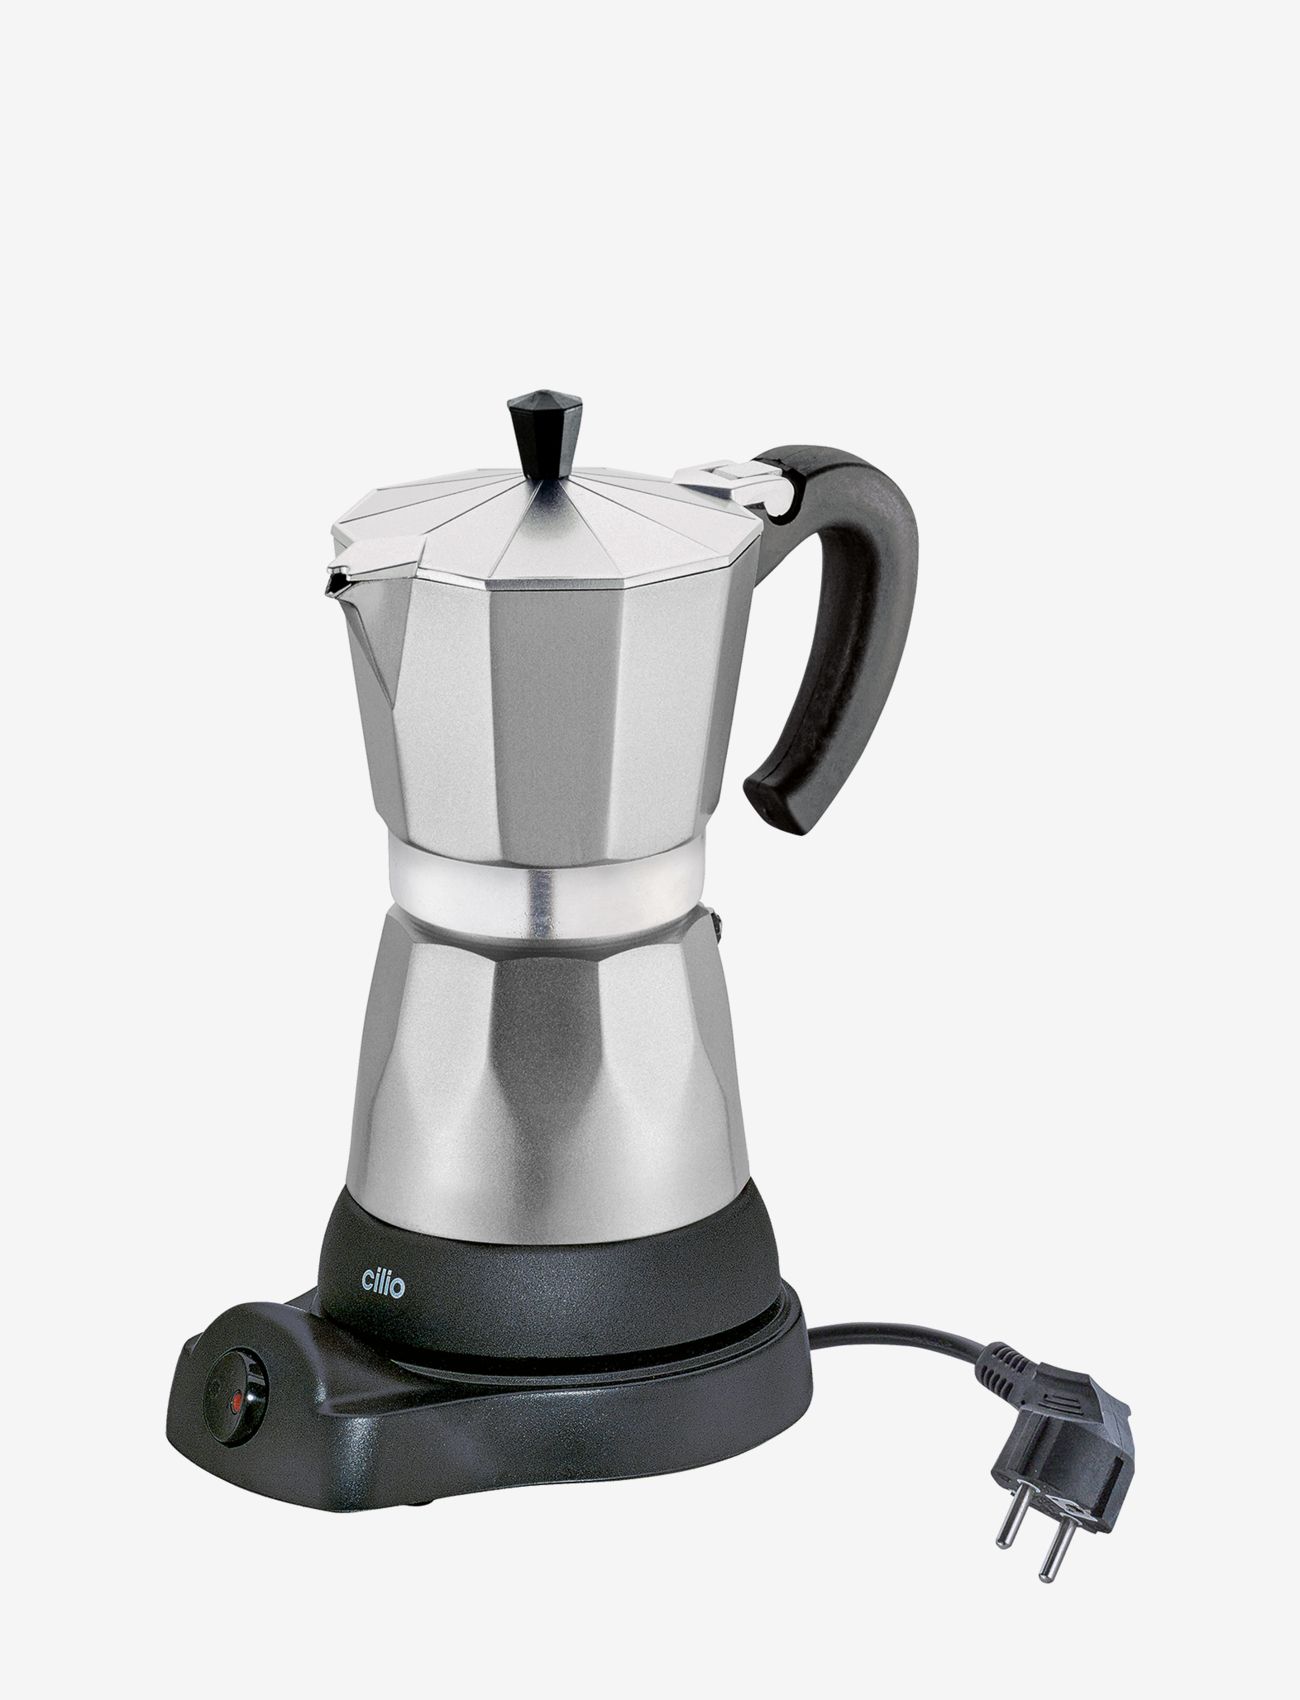 cilio - electric coffee maker "Classico" - mokapotten - aluminum - 0